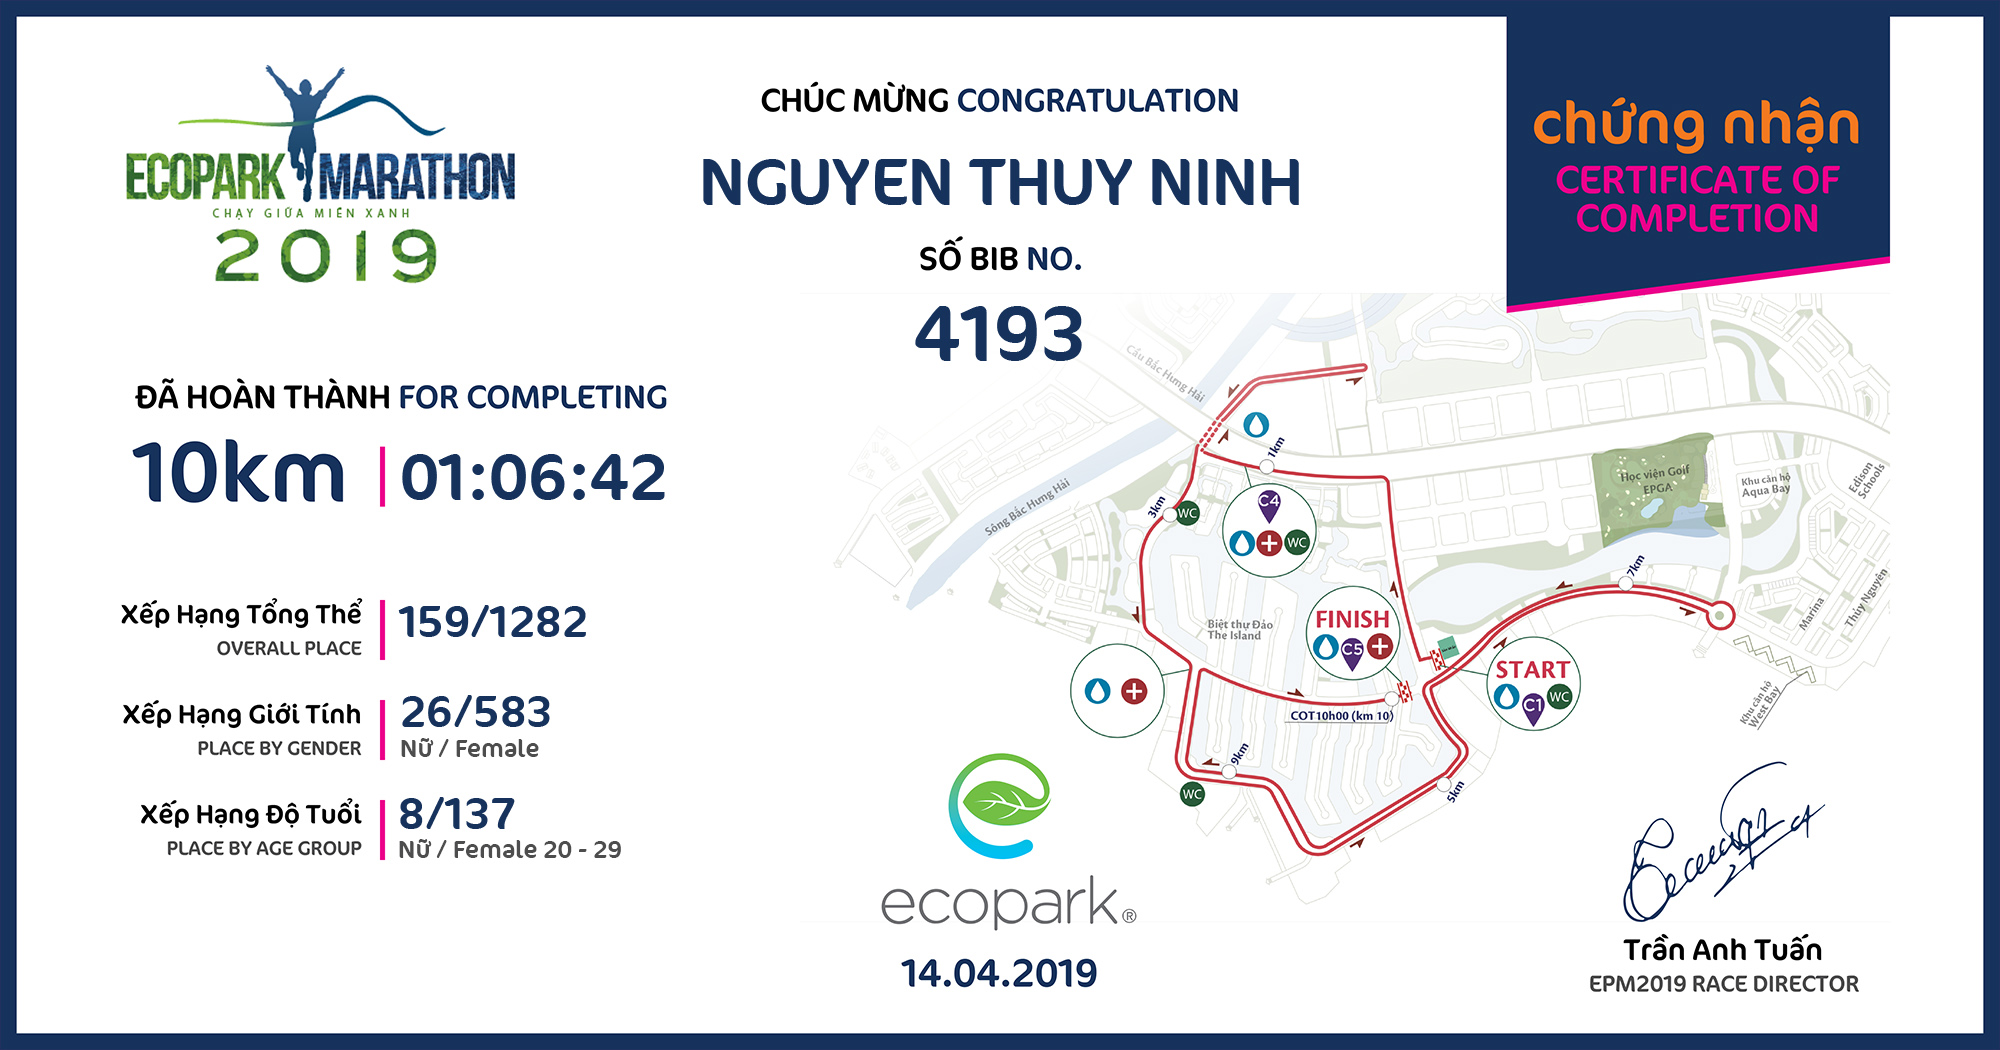 4193 - Nguyen Thuy Ninh